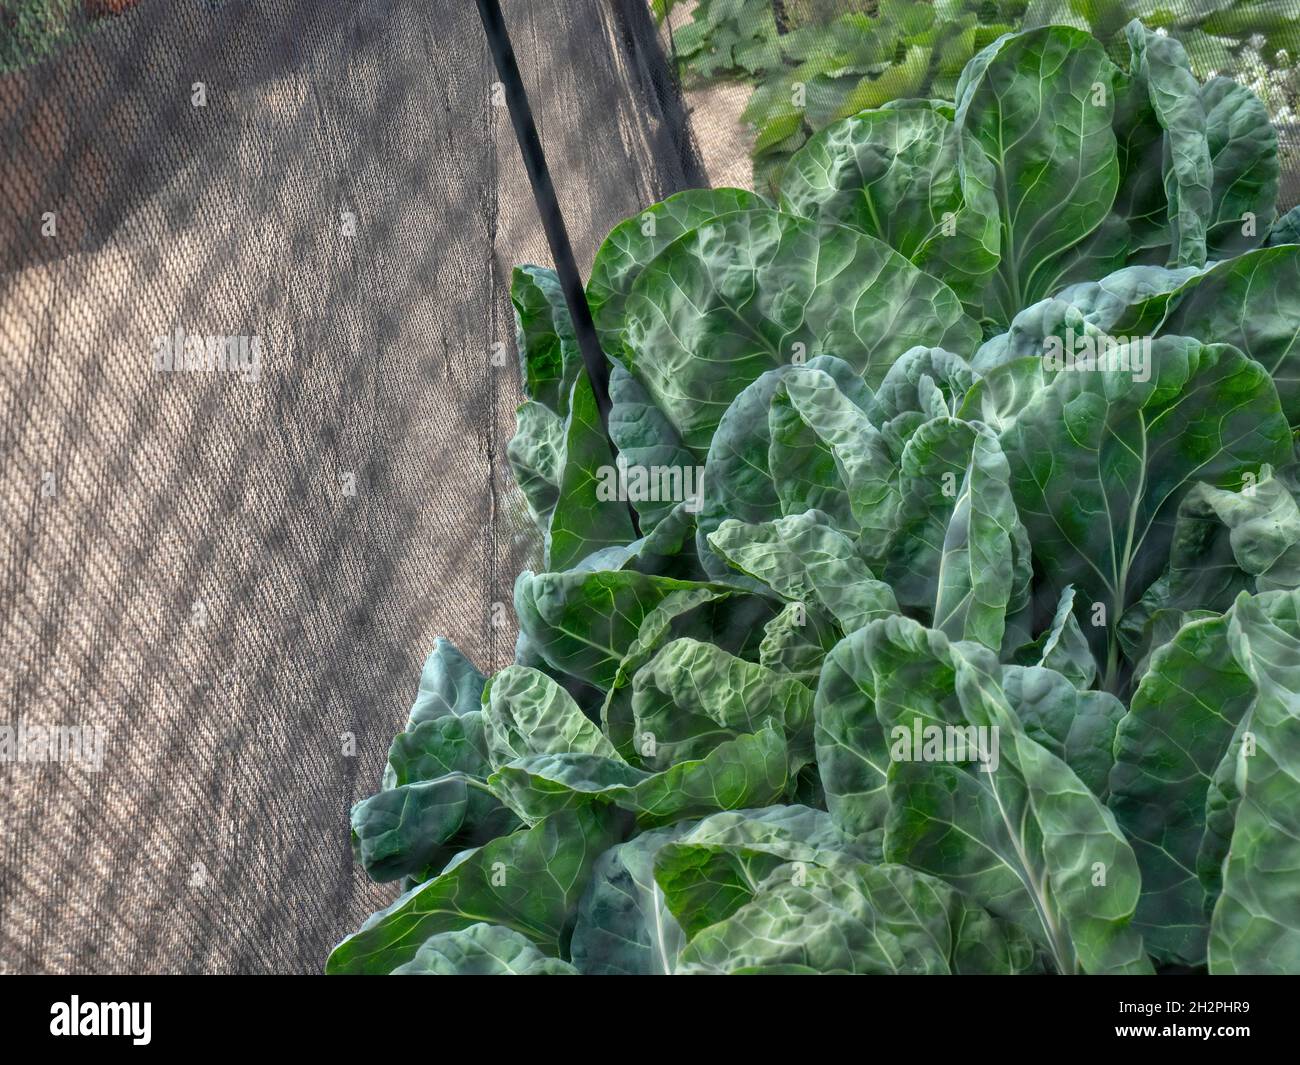 SPROUT TOPS La cabeza de repollo de una planta de distribución de Sprout de Bruselas detrás de la red anti-plagas enviromesh. Las cimas de los brotes son comestibles por derecho propio Foto de stock